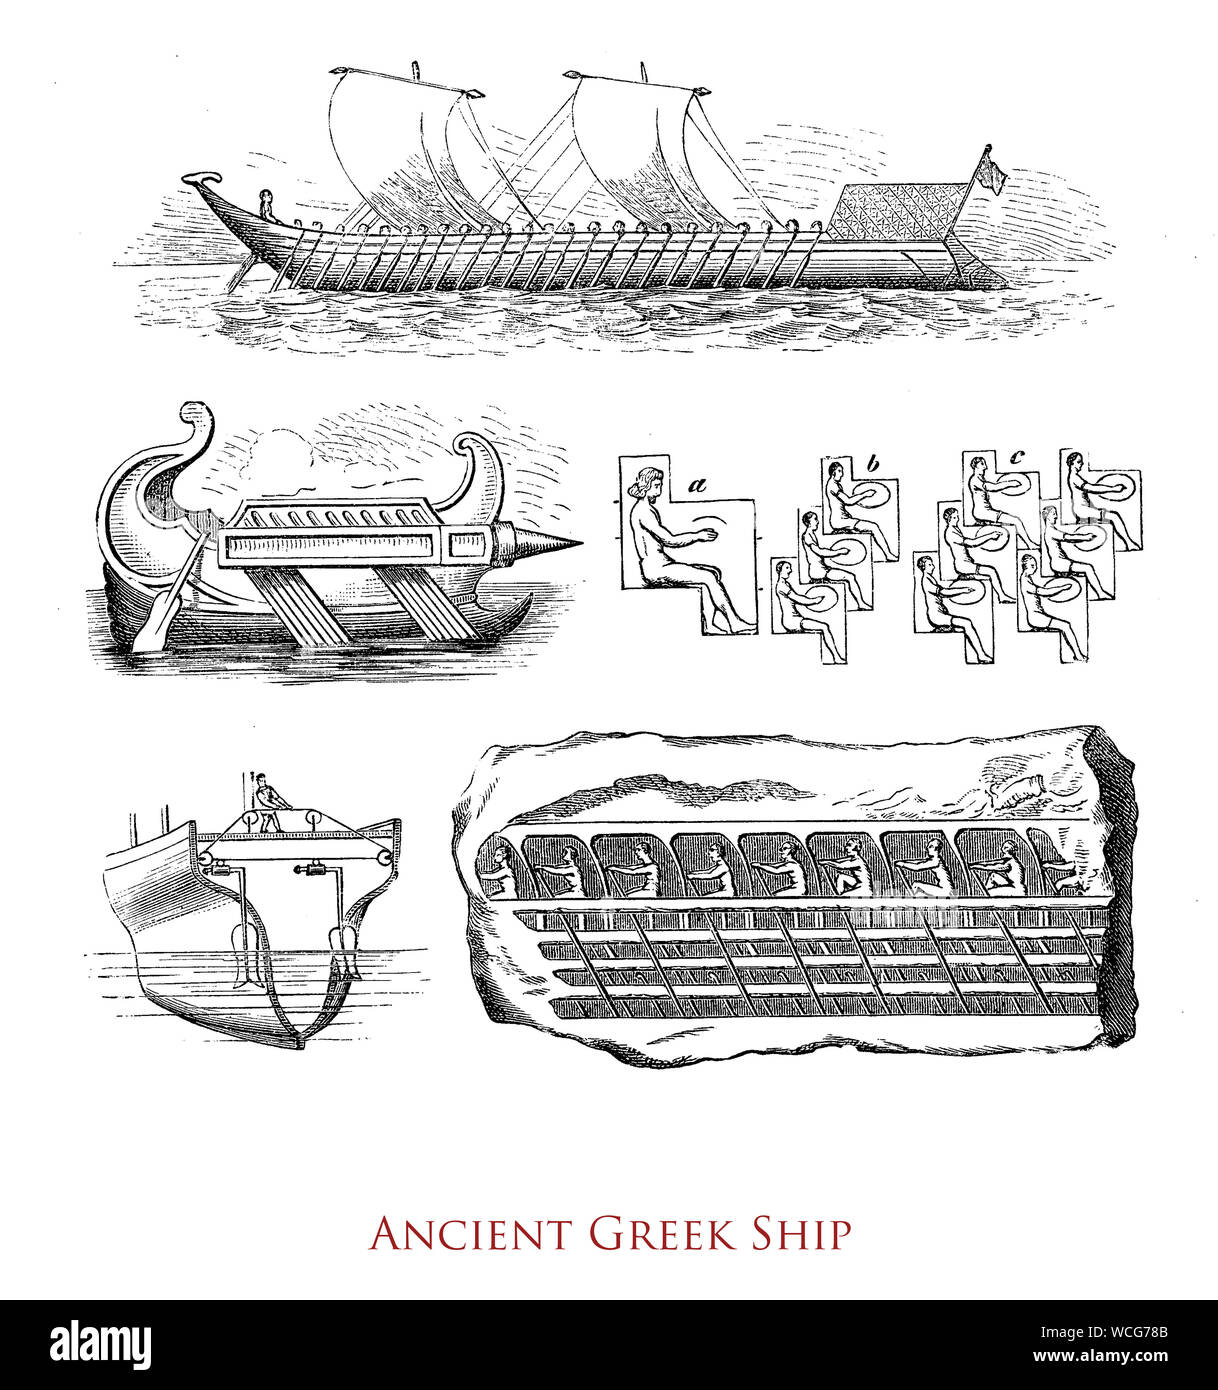 Antichità: antica nave greca, un 'catamarano hull' galley con righe di vogatori e vele rettangolari Foto Stock